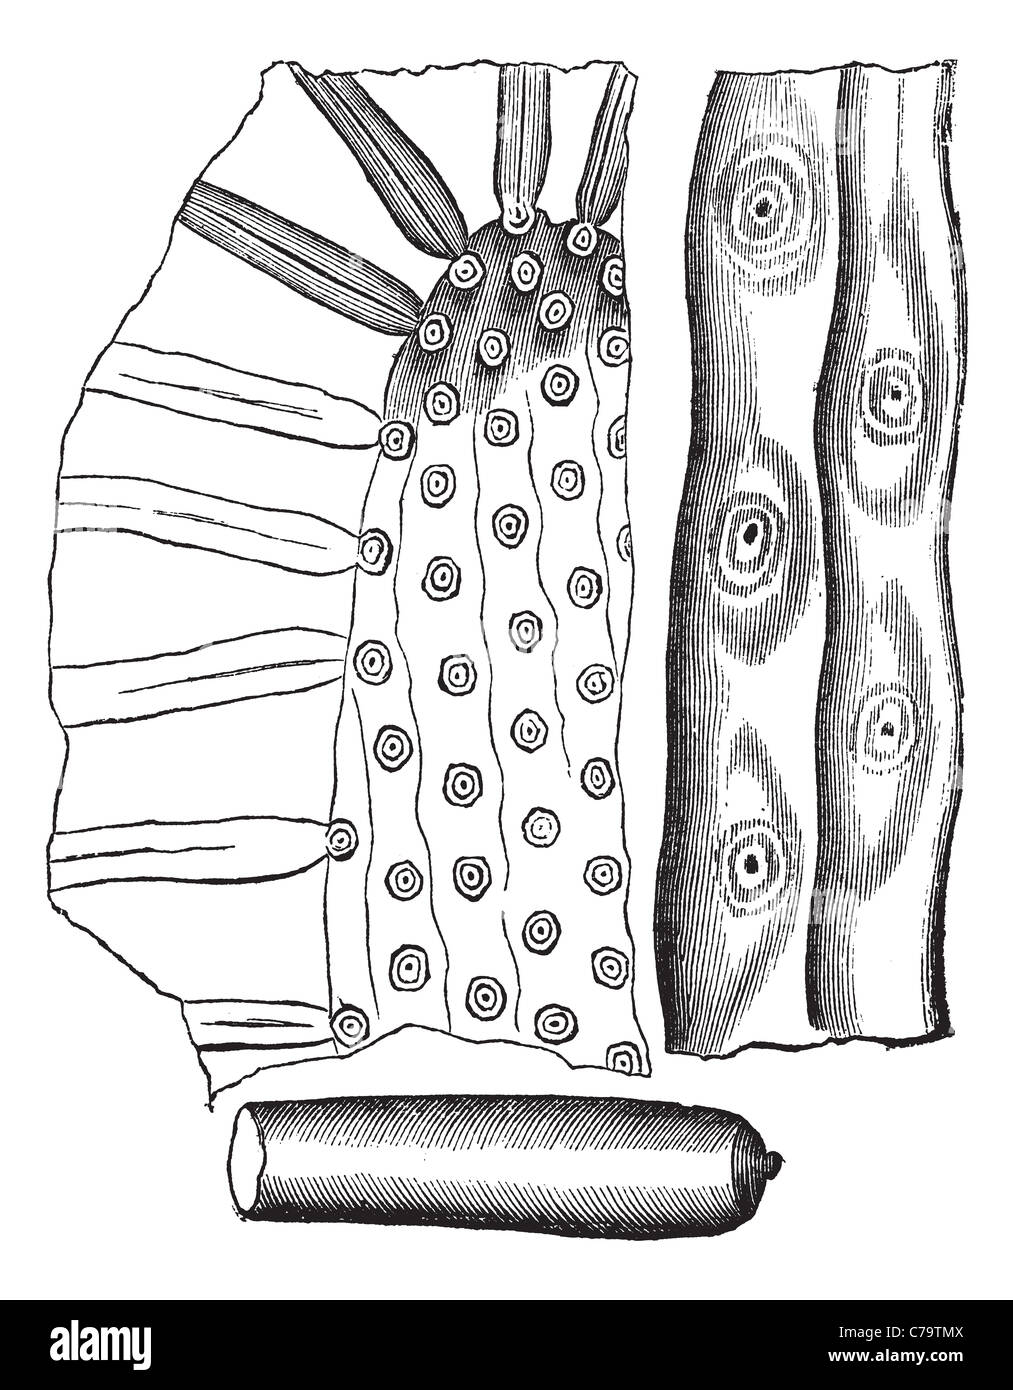 Stigmaria, gravure d'époque. Vieille illustration gravée de Stigmaria, une ramification primitive racine d'arbre. Banque D'Images